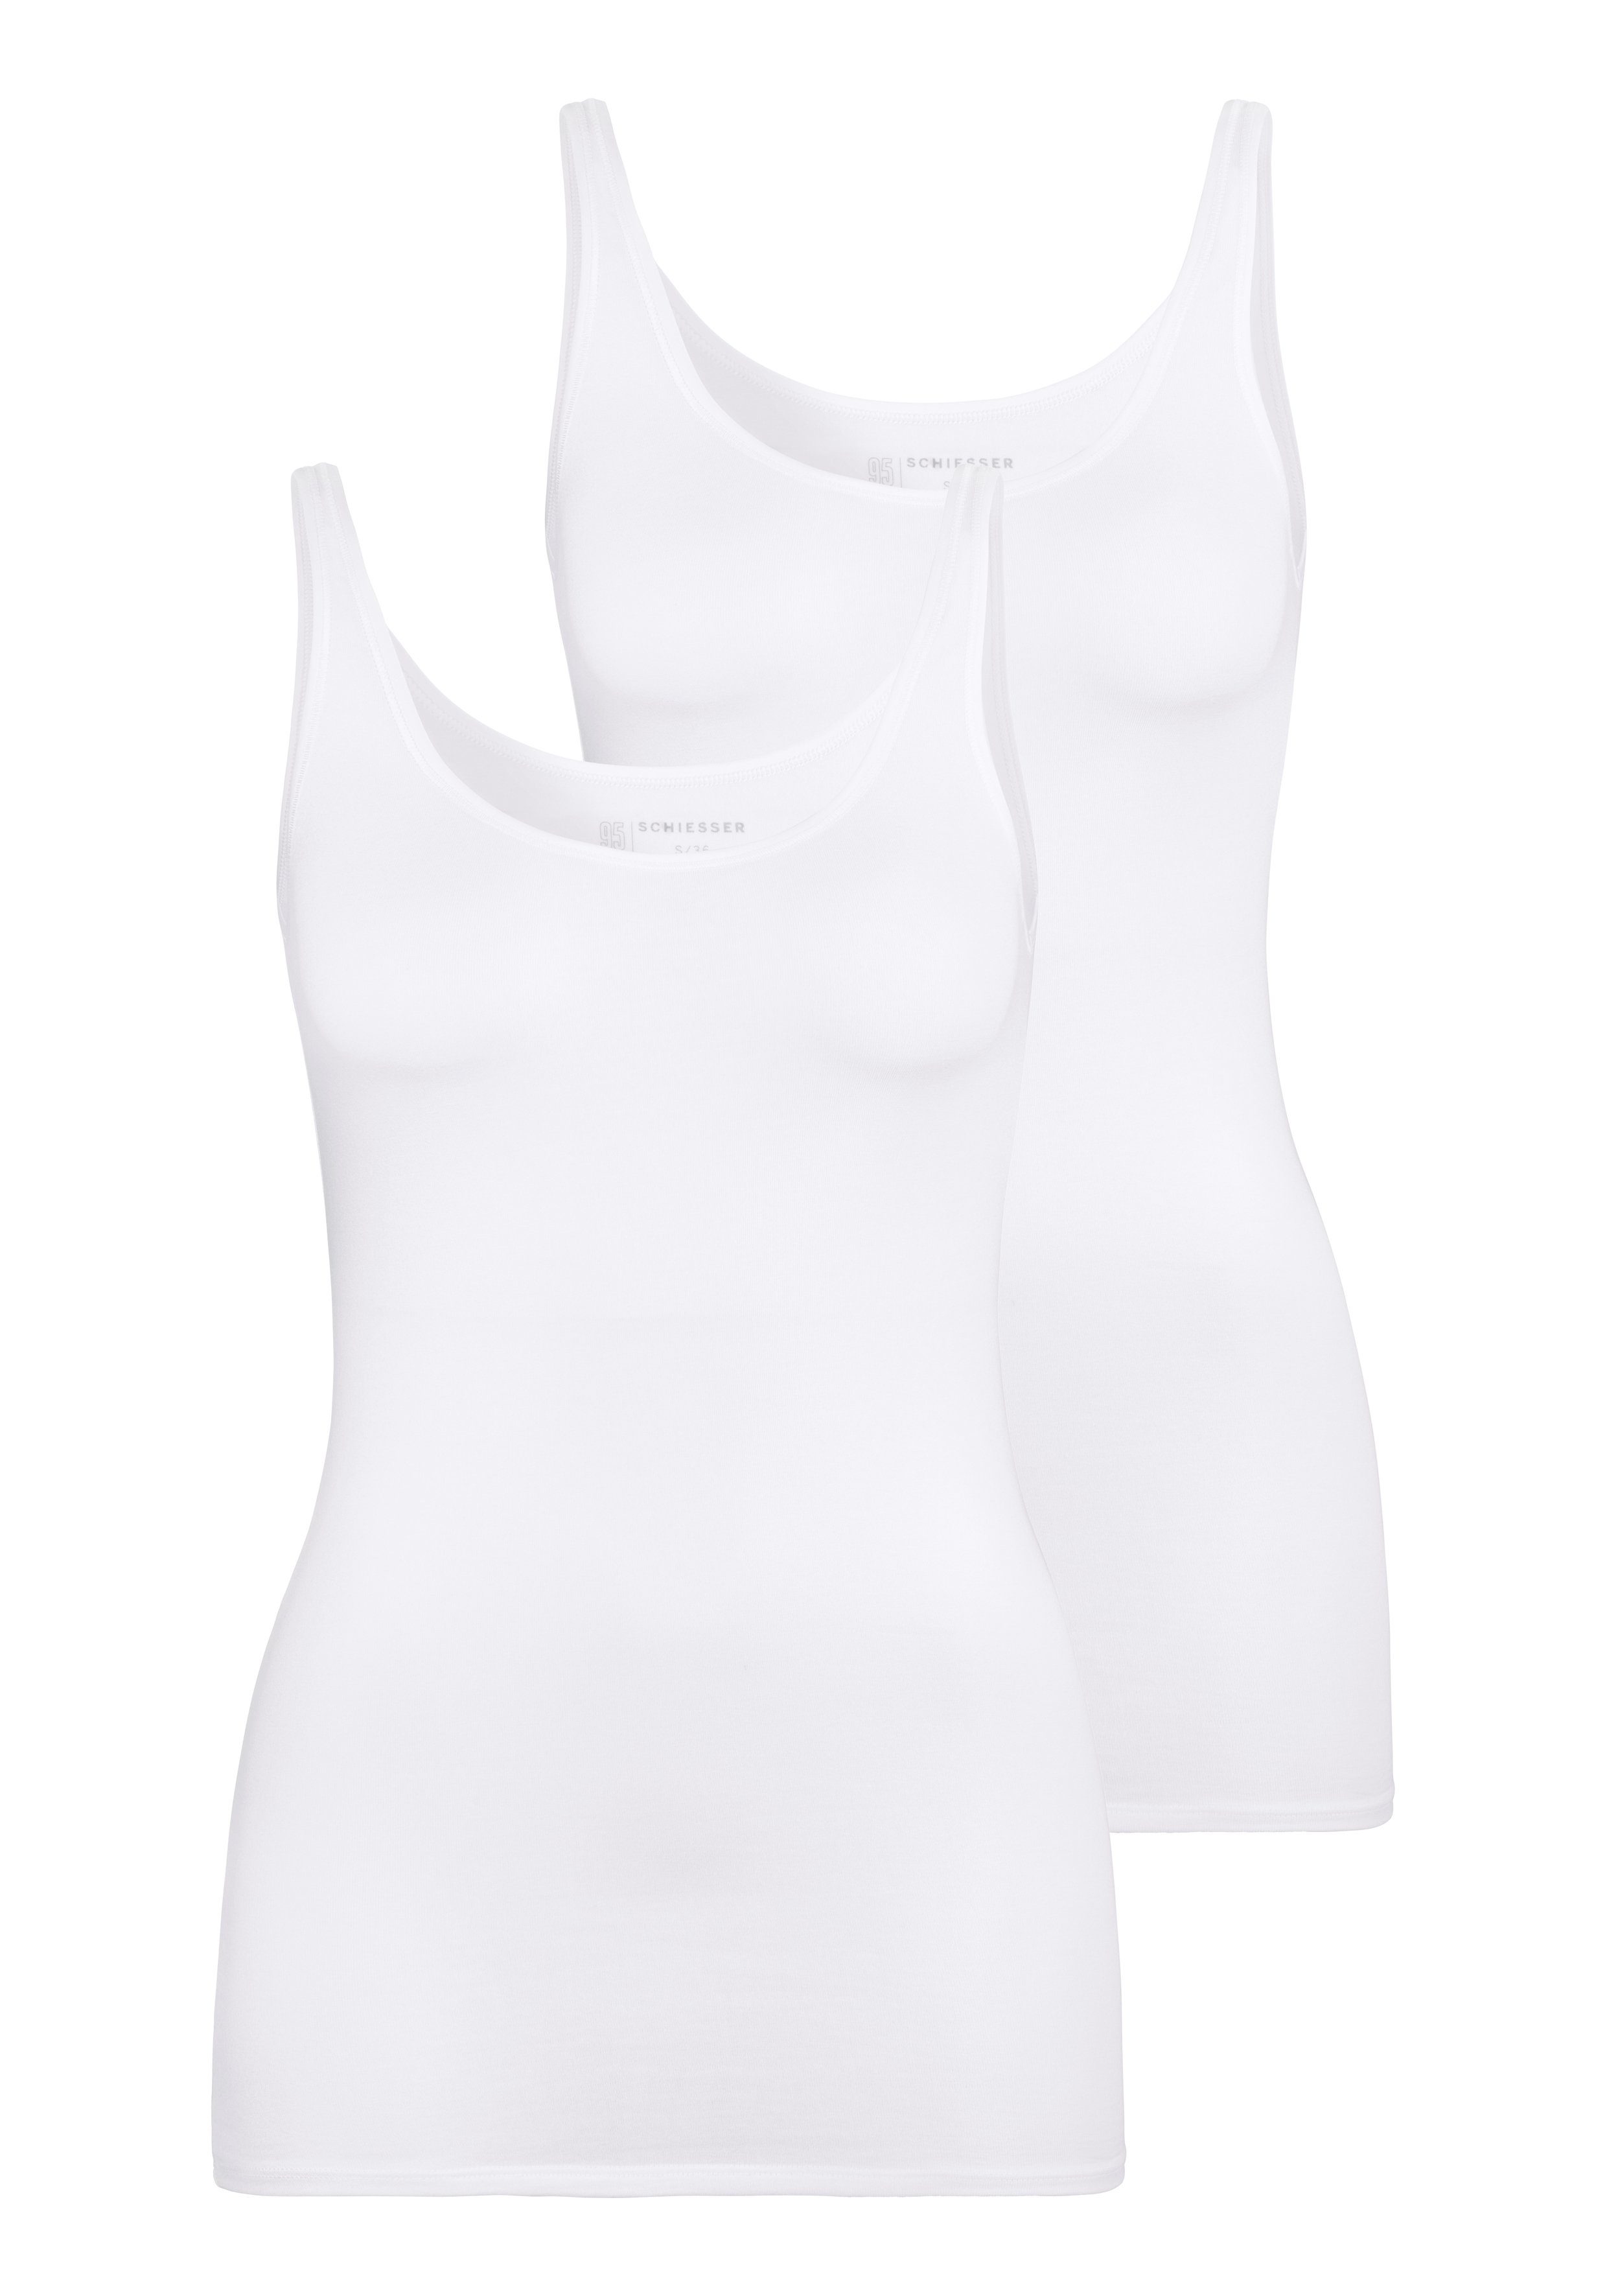 Schiesser Unterhemd (2er-Pack) mit Single-Jersey-Qualität 2xweiß elastischer